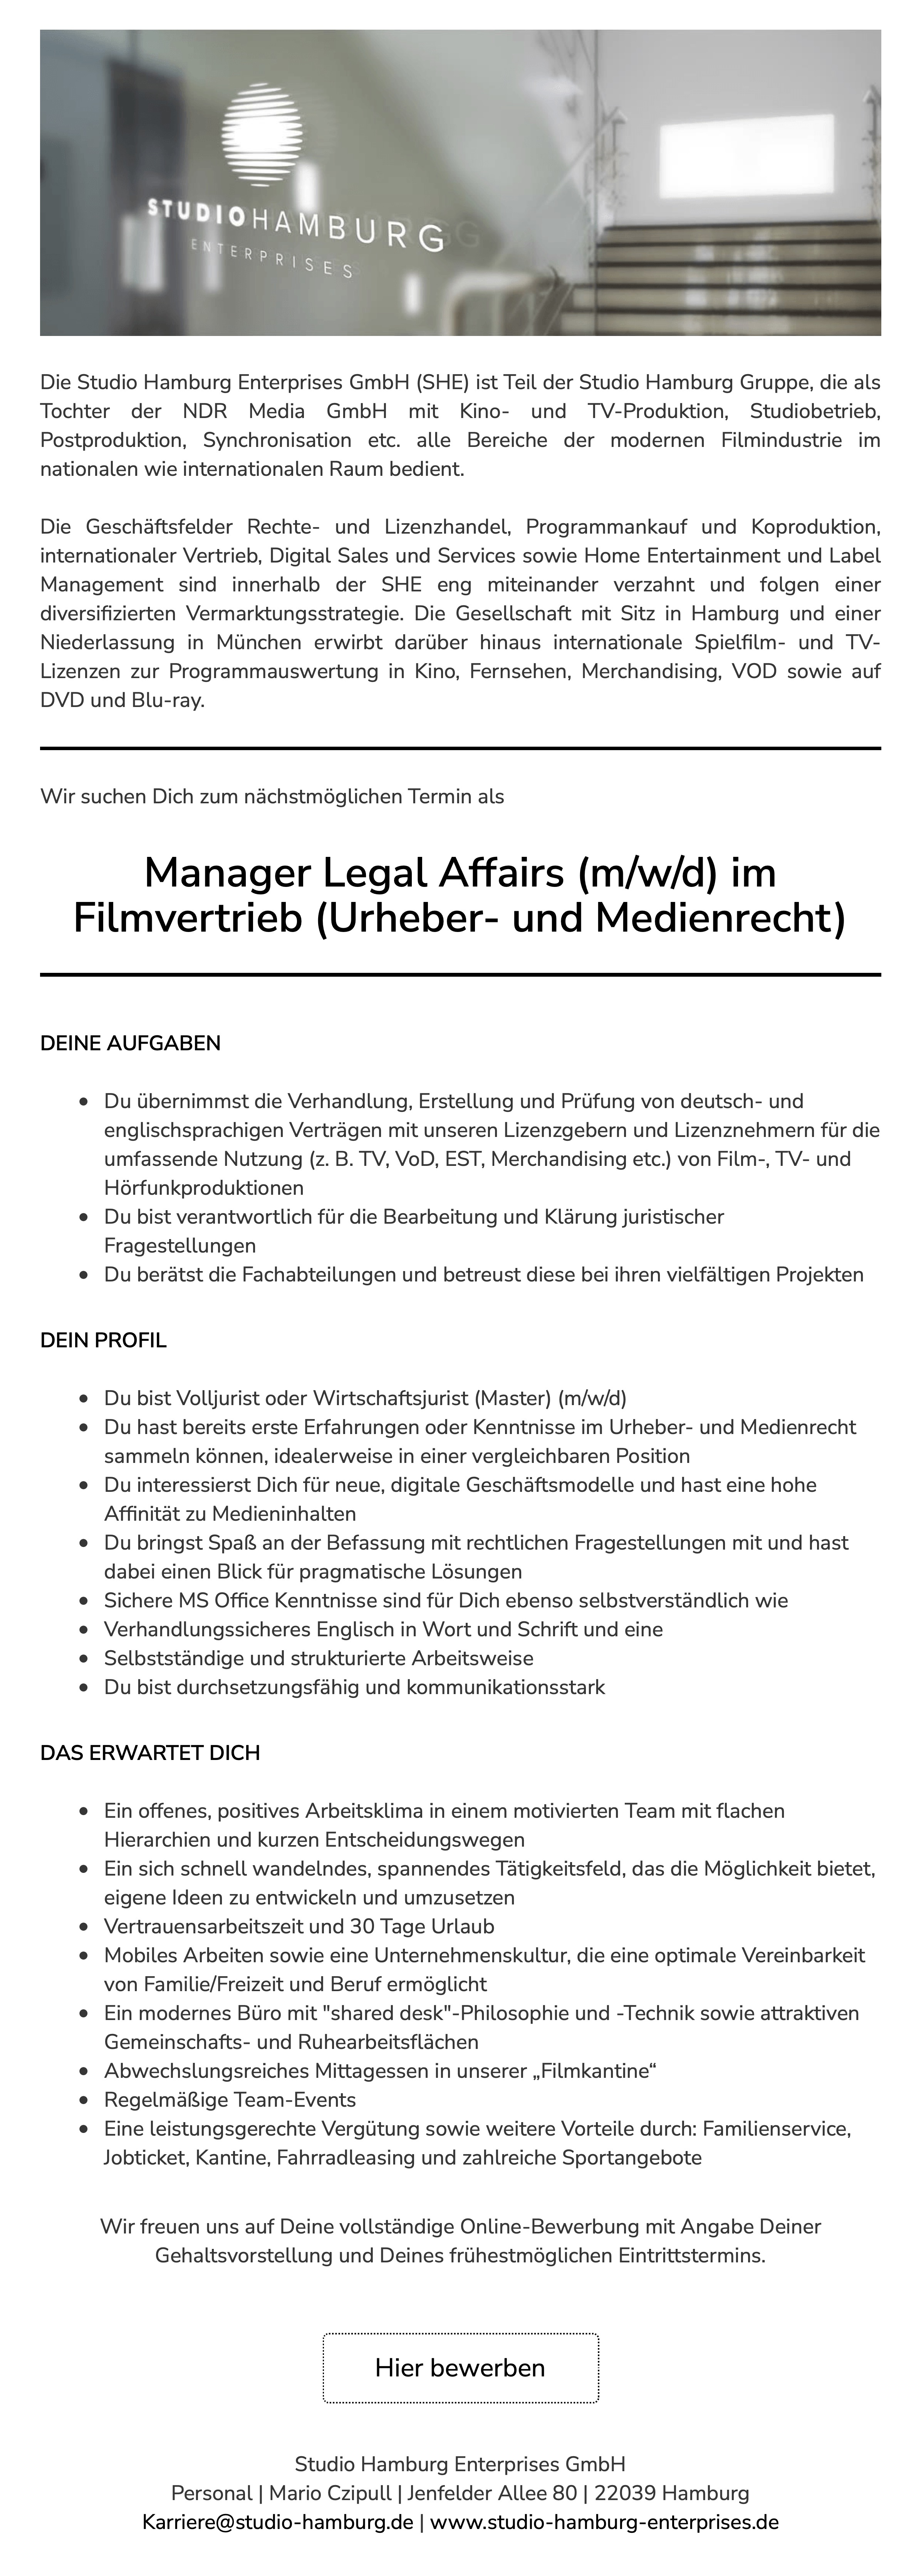 Manager Legal Affairs (m/w/d) im Filmvertrieb (Urheber- und Medienrecht)